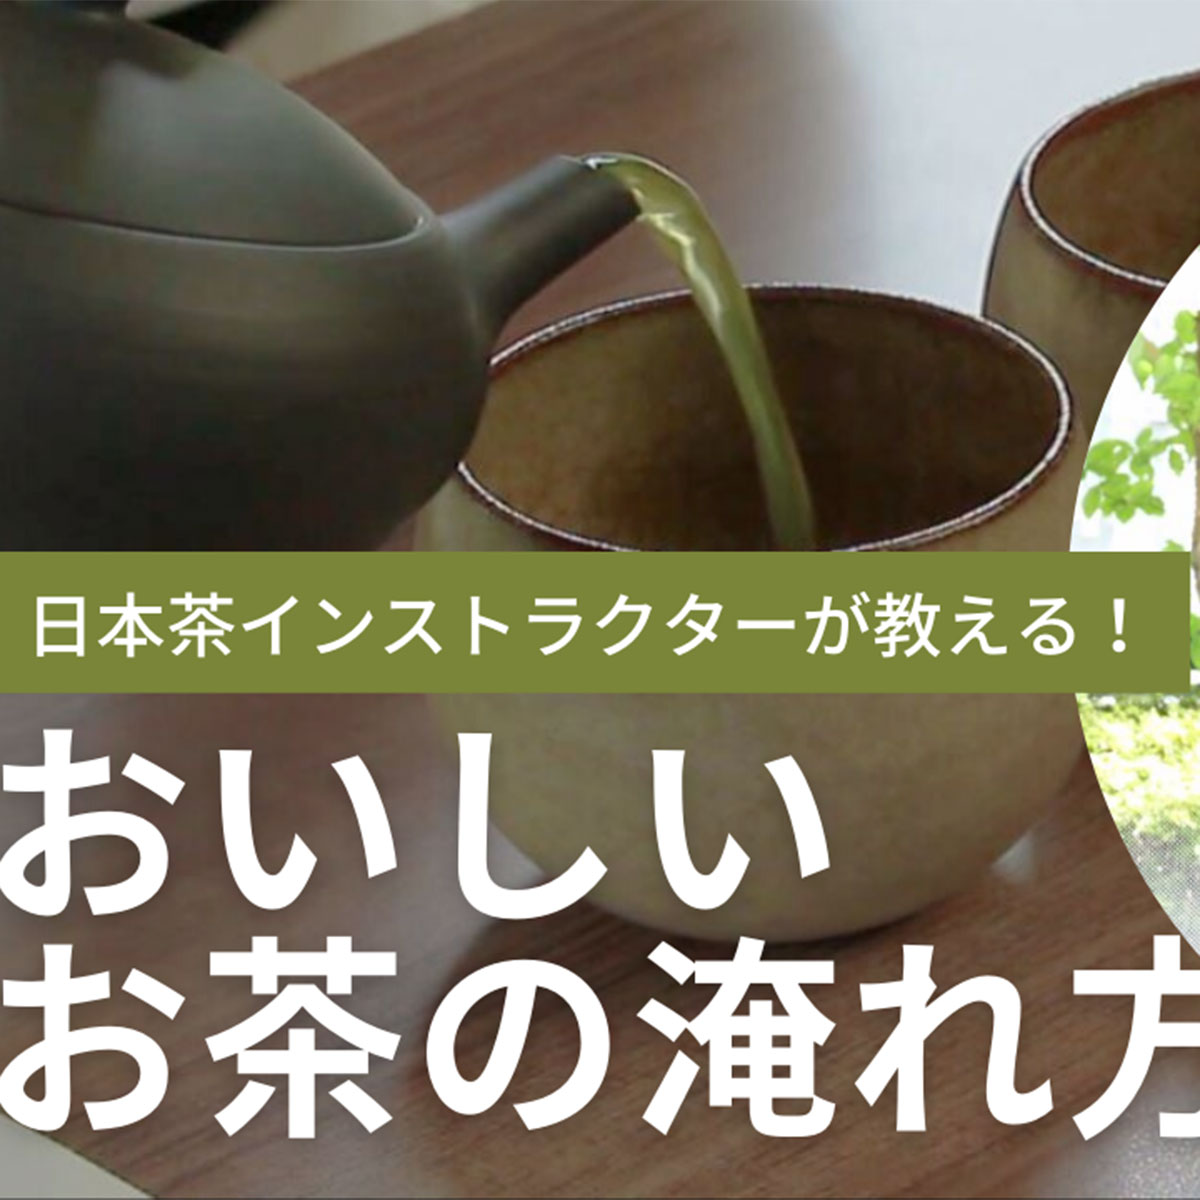 おトク情報がいっぱい！ x2966_おいしいお茶 いれよ ―日本茶中国茶紅茶ハーブティー～茶葉の種類や 湯の温度 入れるコツなど紹介  お茶受け菓子の作り方も